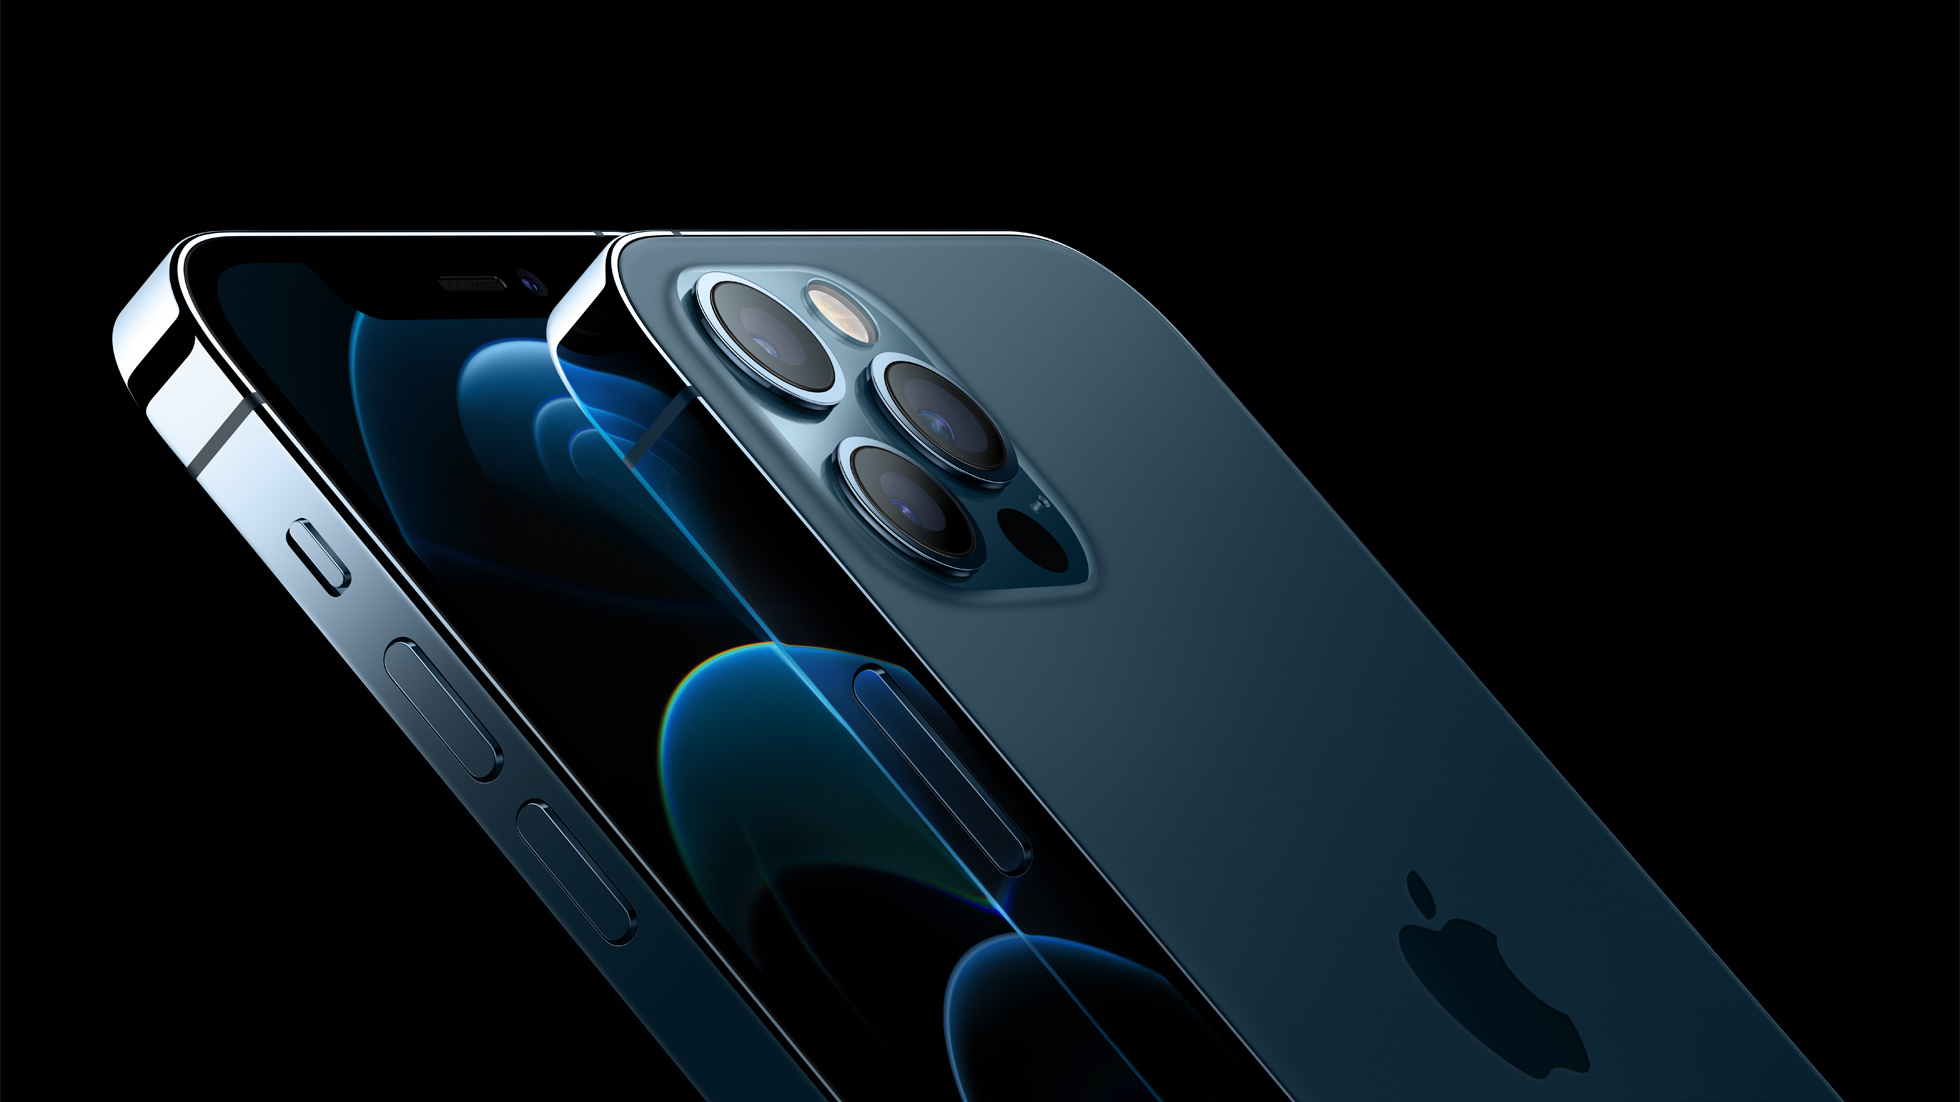 Immagine pubblicata in relazione al seguente contenuto: Apple annuncia iPhone 12 Pro Max, iPhone 12 Pro, iPhone 12 e iPhone 12 mini | Nome immagine: news31219_Apple-iPhone-12_1.jpg